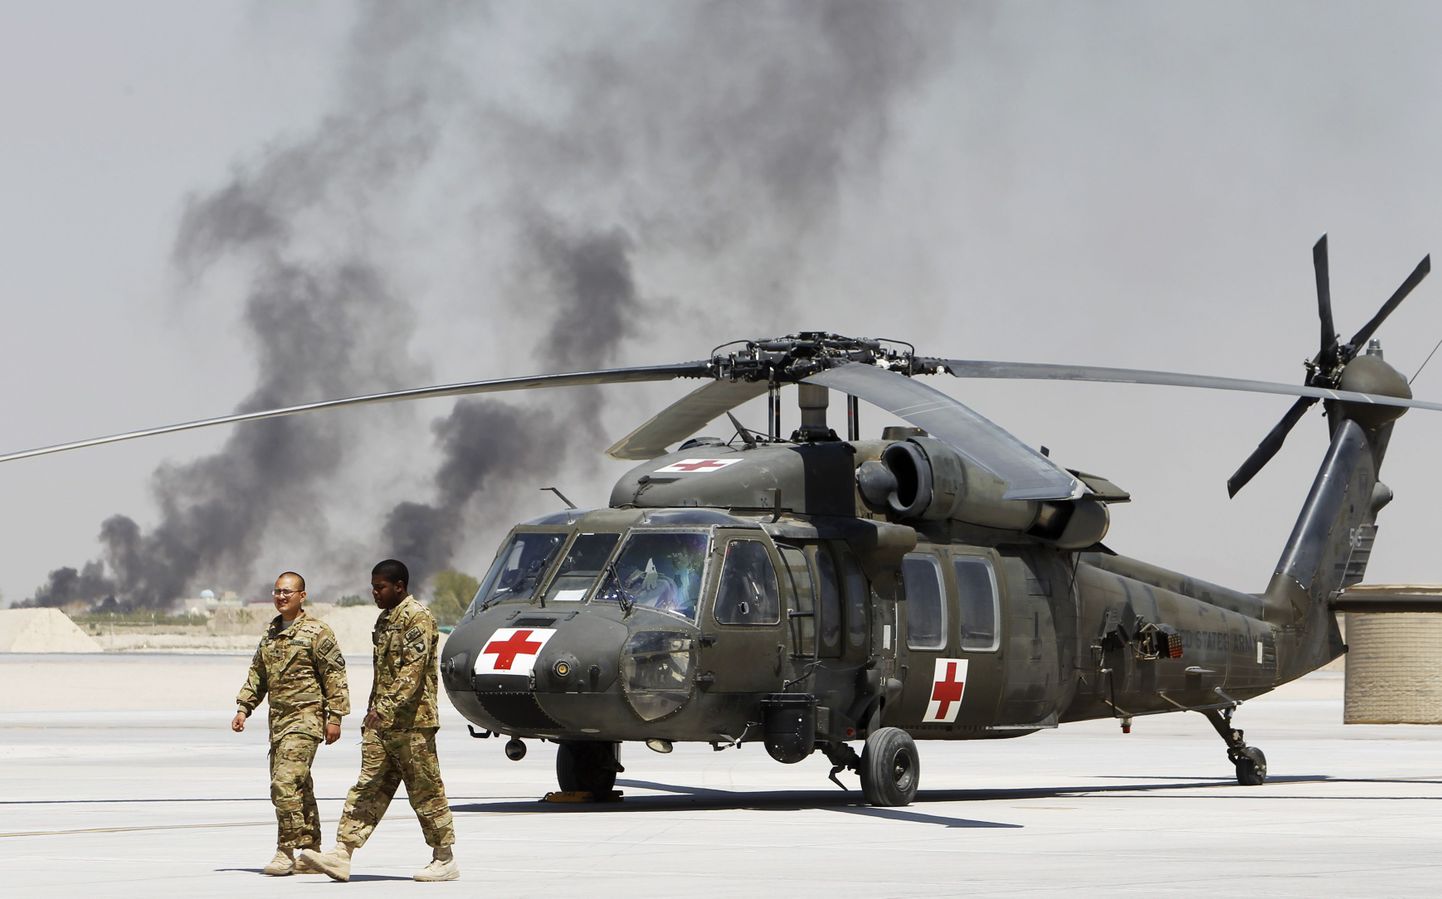 Ameerika Ühendriikide meedikud Black Hawk kopteri juures Kandaharis (Afganistan).